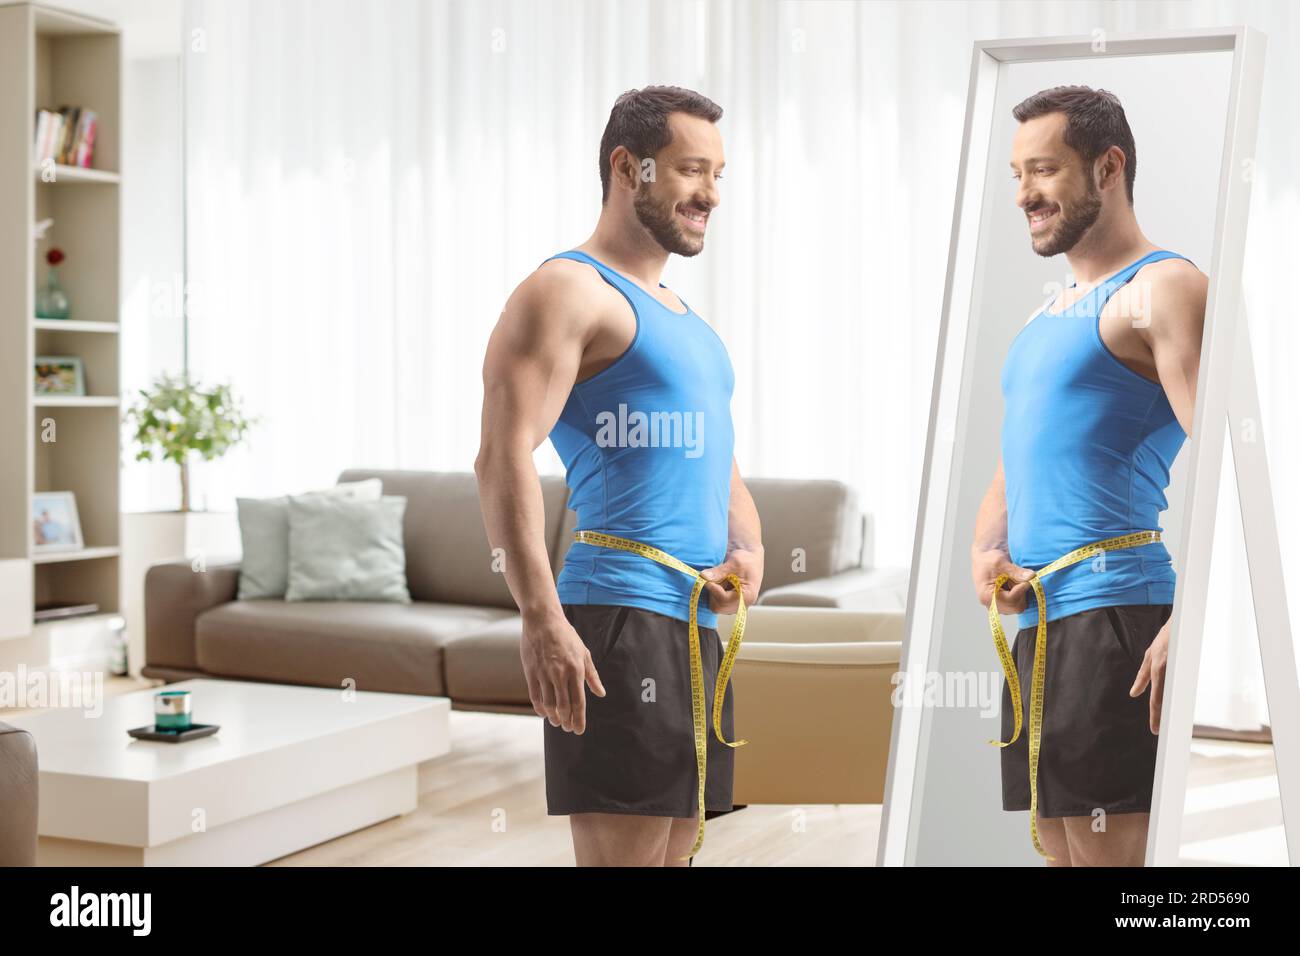 Passen Sie den Mann in Sportbekleidung mit Taillenumfang vor einem Spiegel zu Hause an Stockfoto